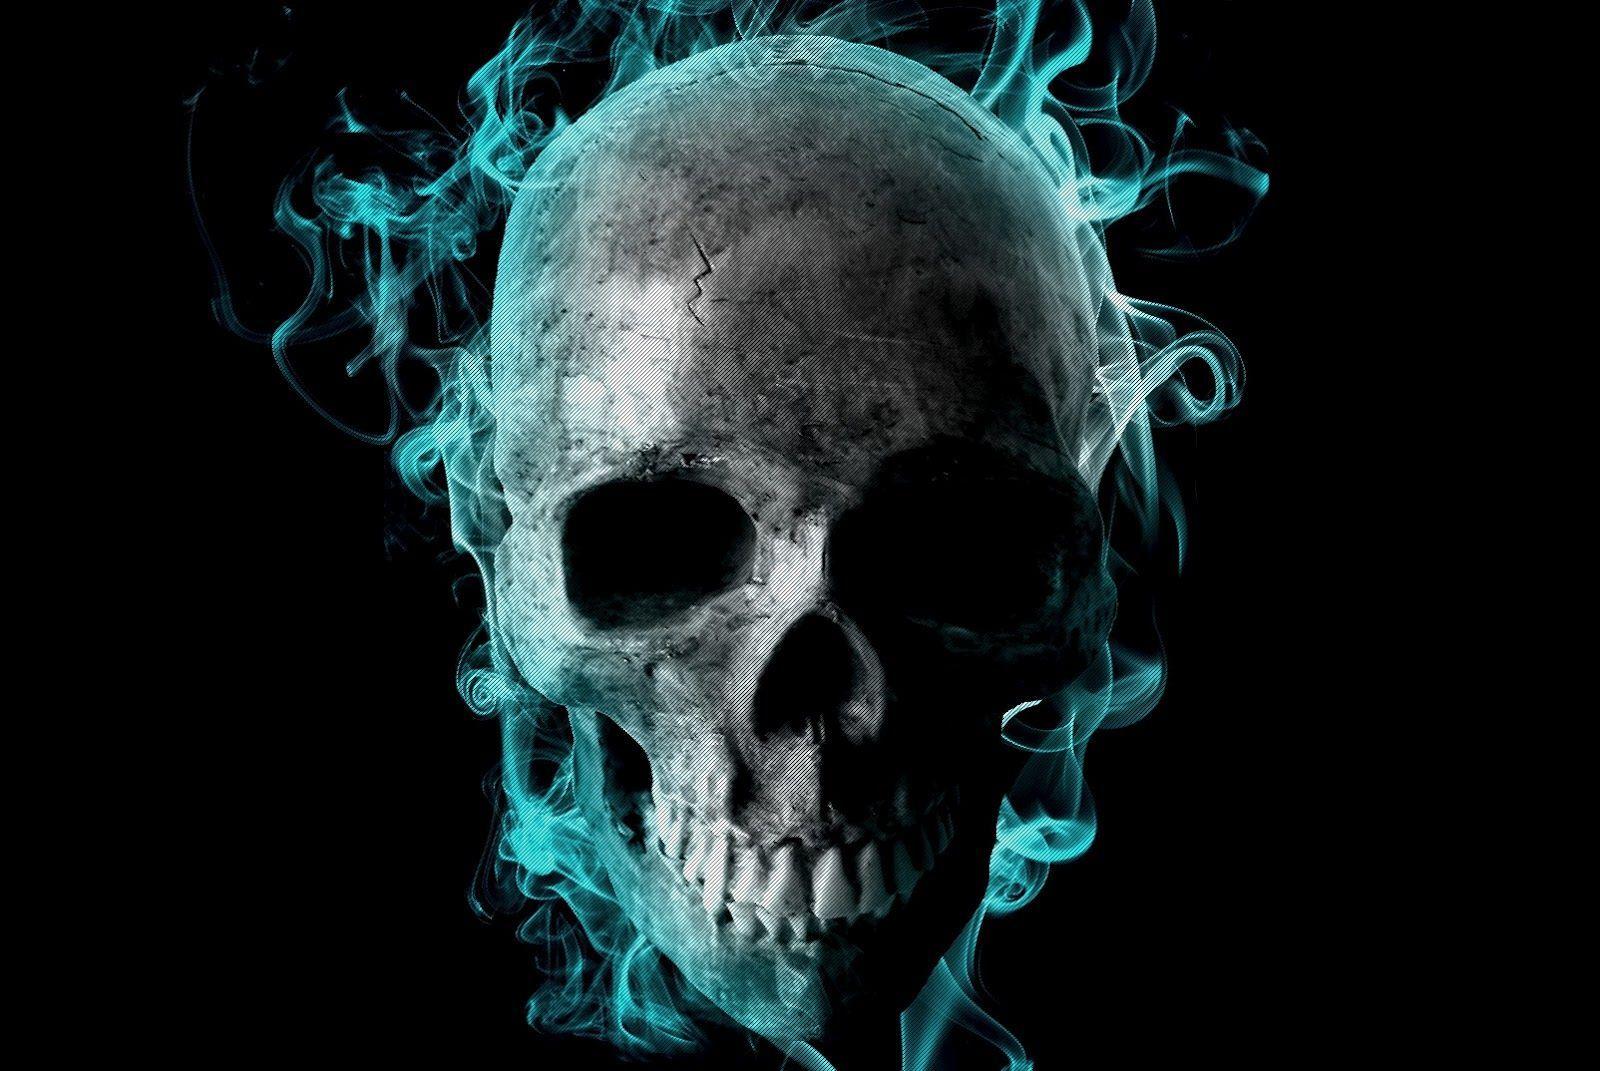 Incredible Flaming Skull 3D Wallpaper.org. More Ghost